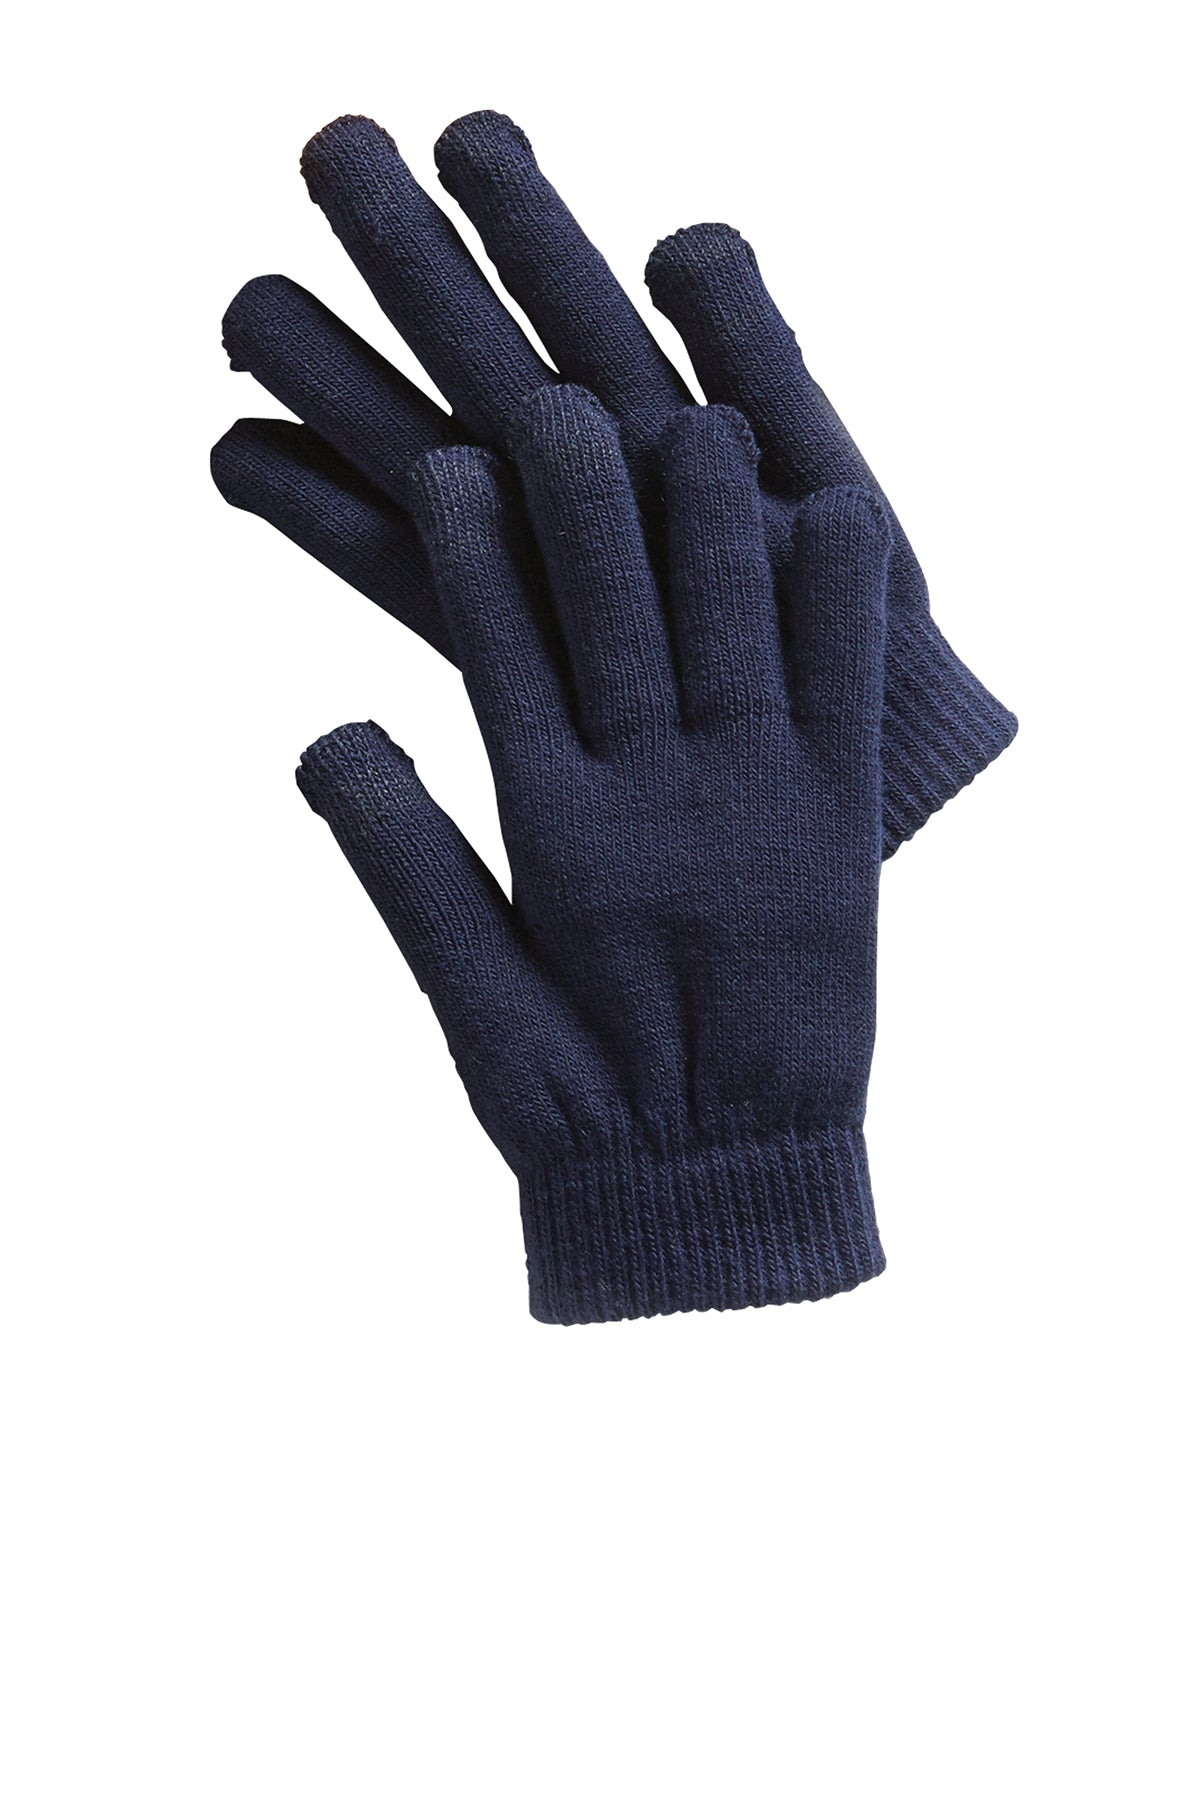 Navy Spectator Gloves